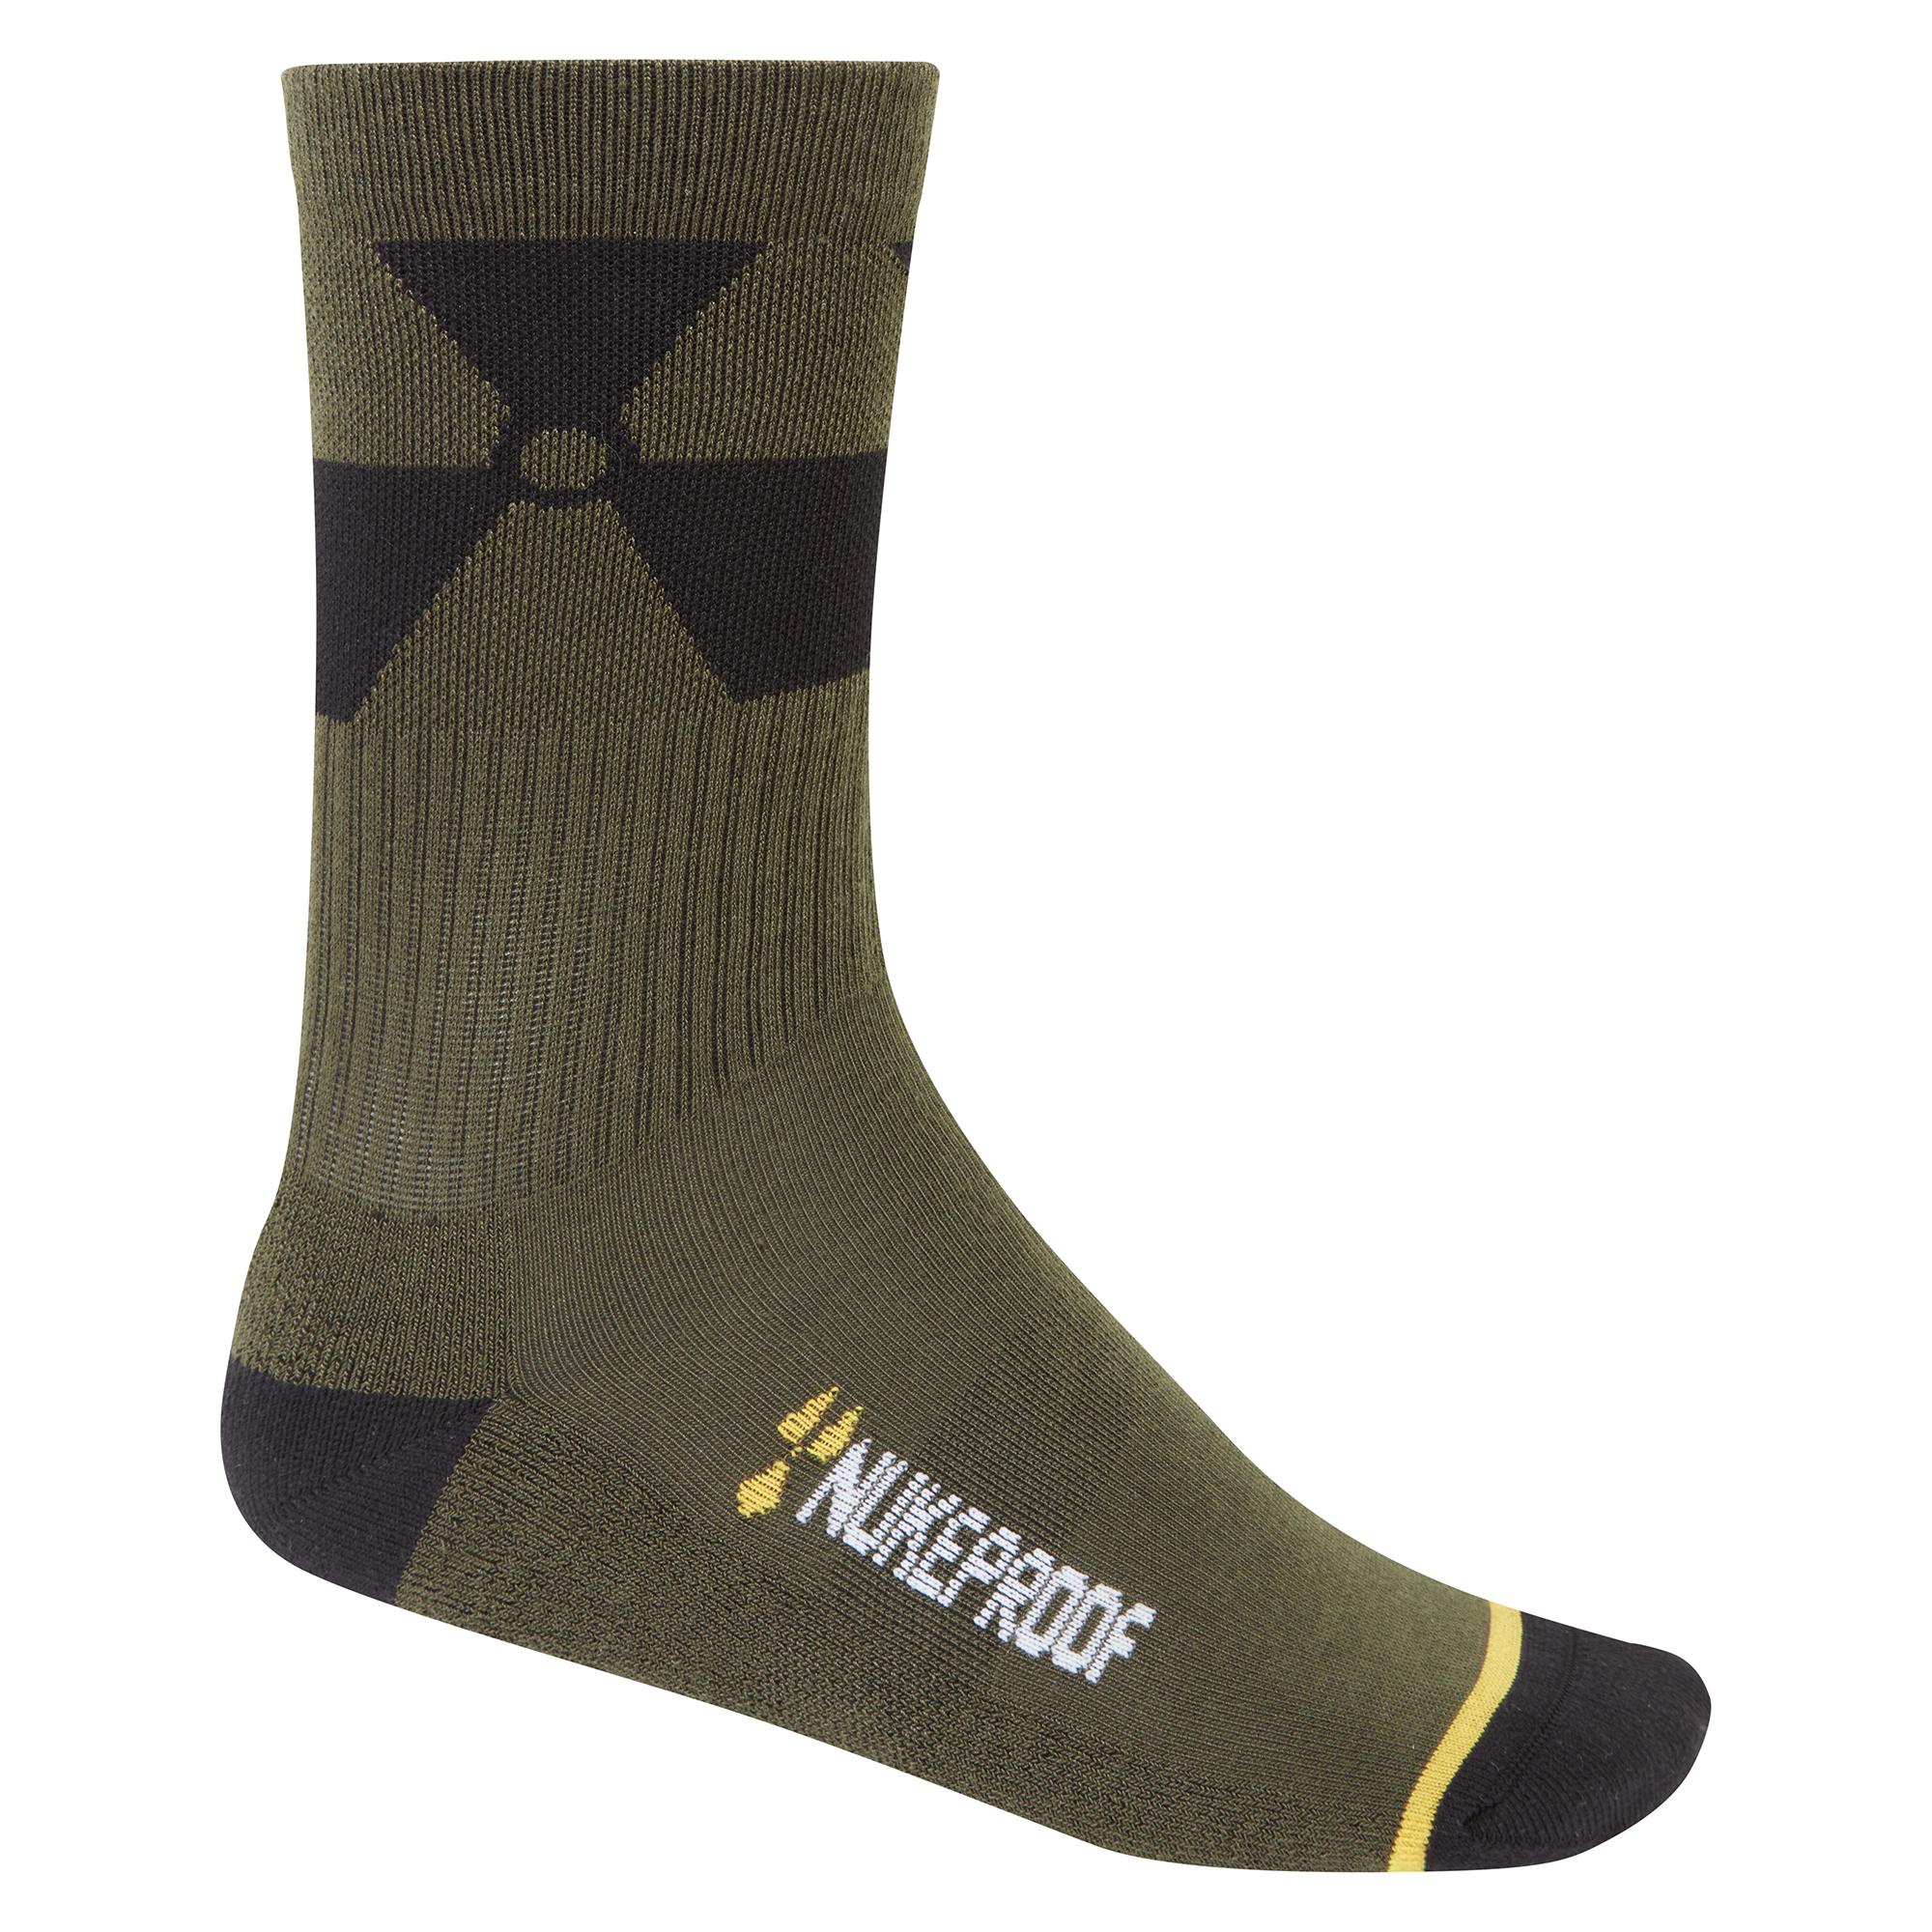 Nukeproof Blackline Sock 2.0 - Elm